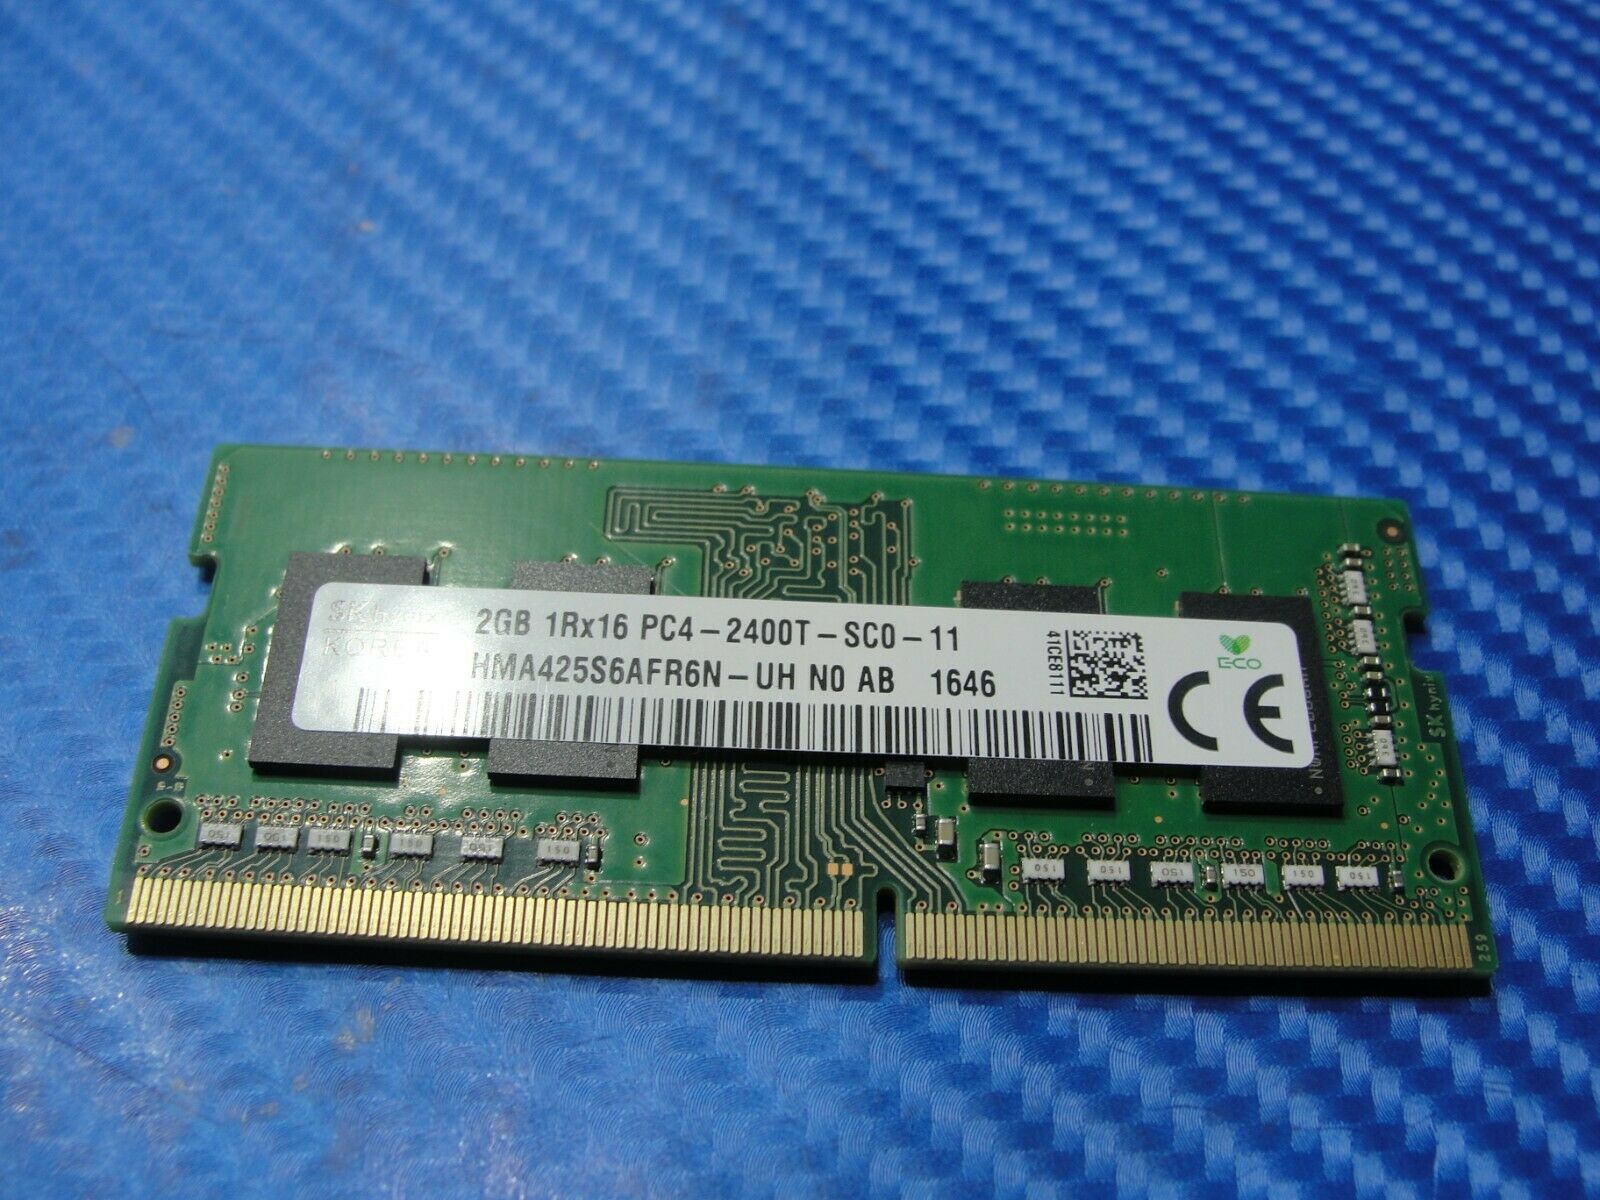 Dell 15 5566 SK Hynix 2GB 1Rx16 PC4-2400T SO-DIMM Memory RAM HMA425S6AFR6N-UH SK hynix